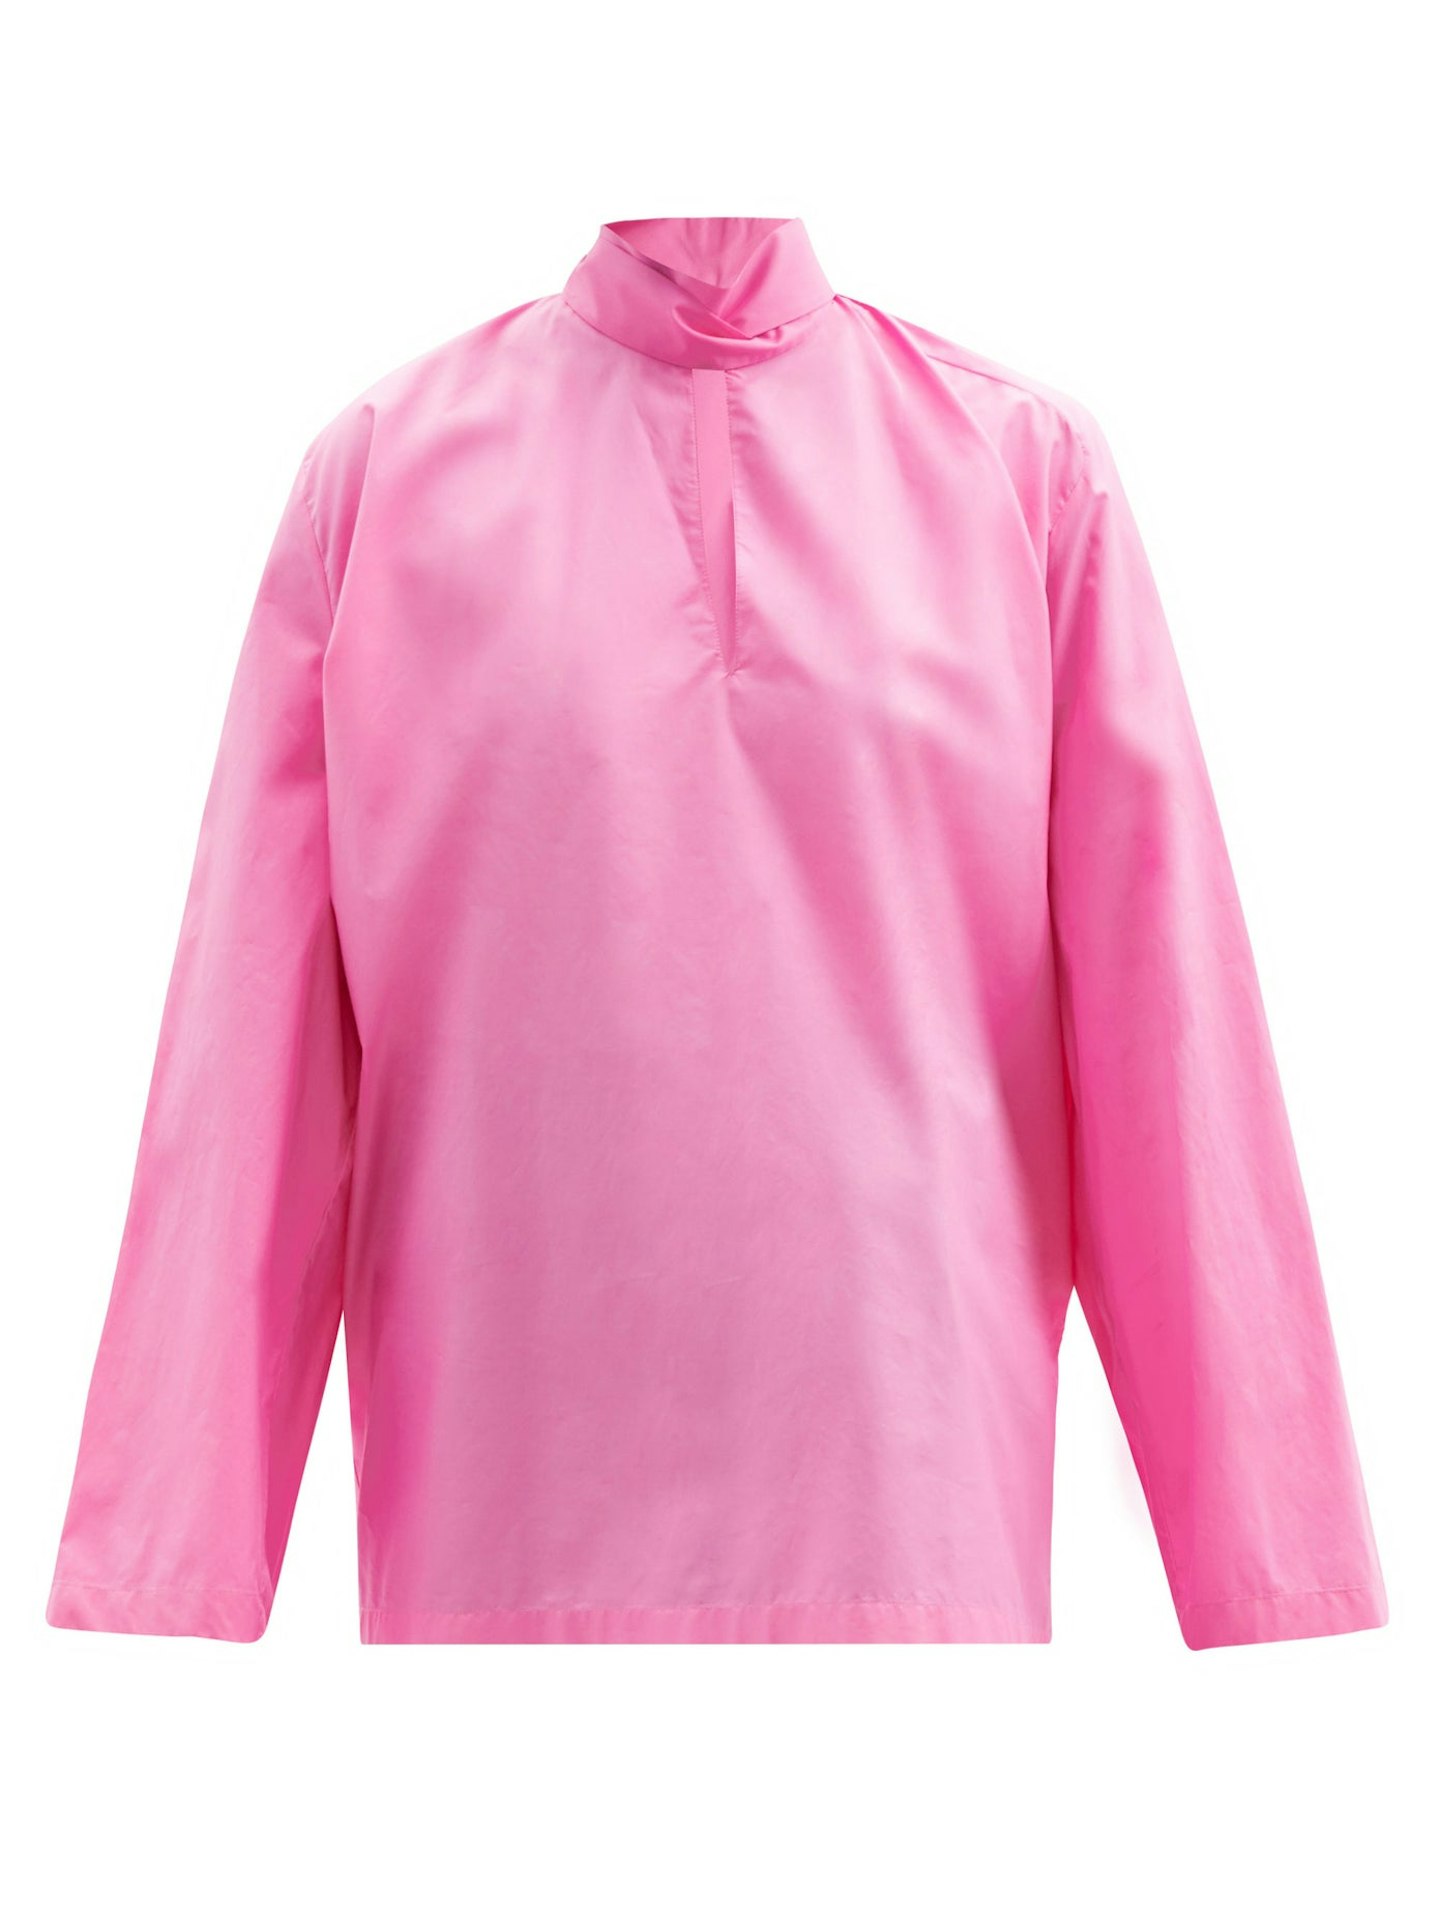 Balenciaga, Pink Cotton-Poplin Blouse, £750